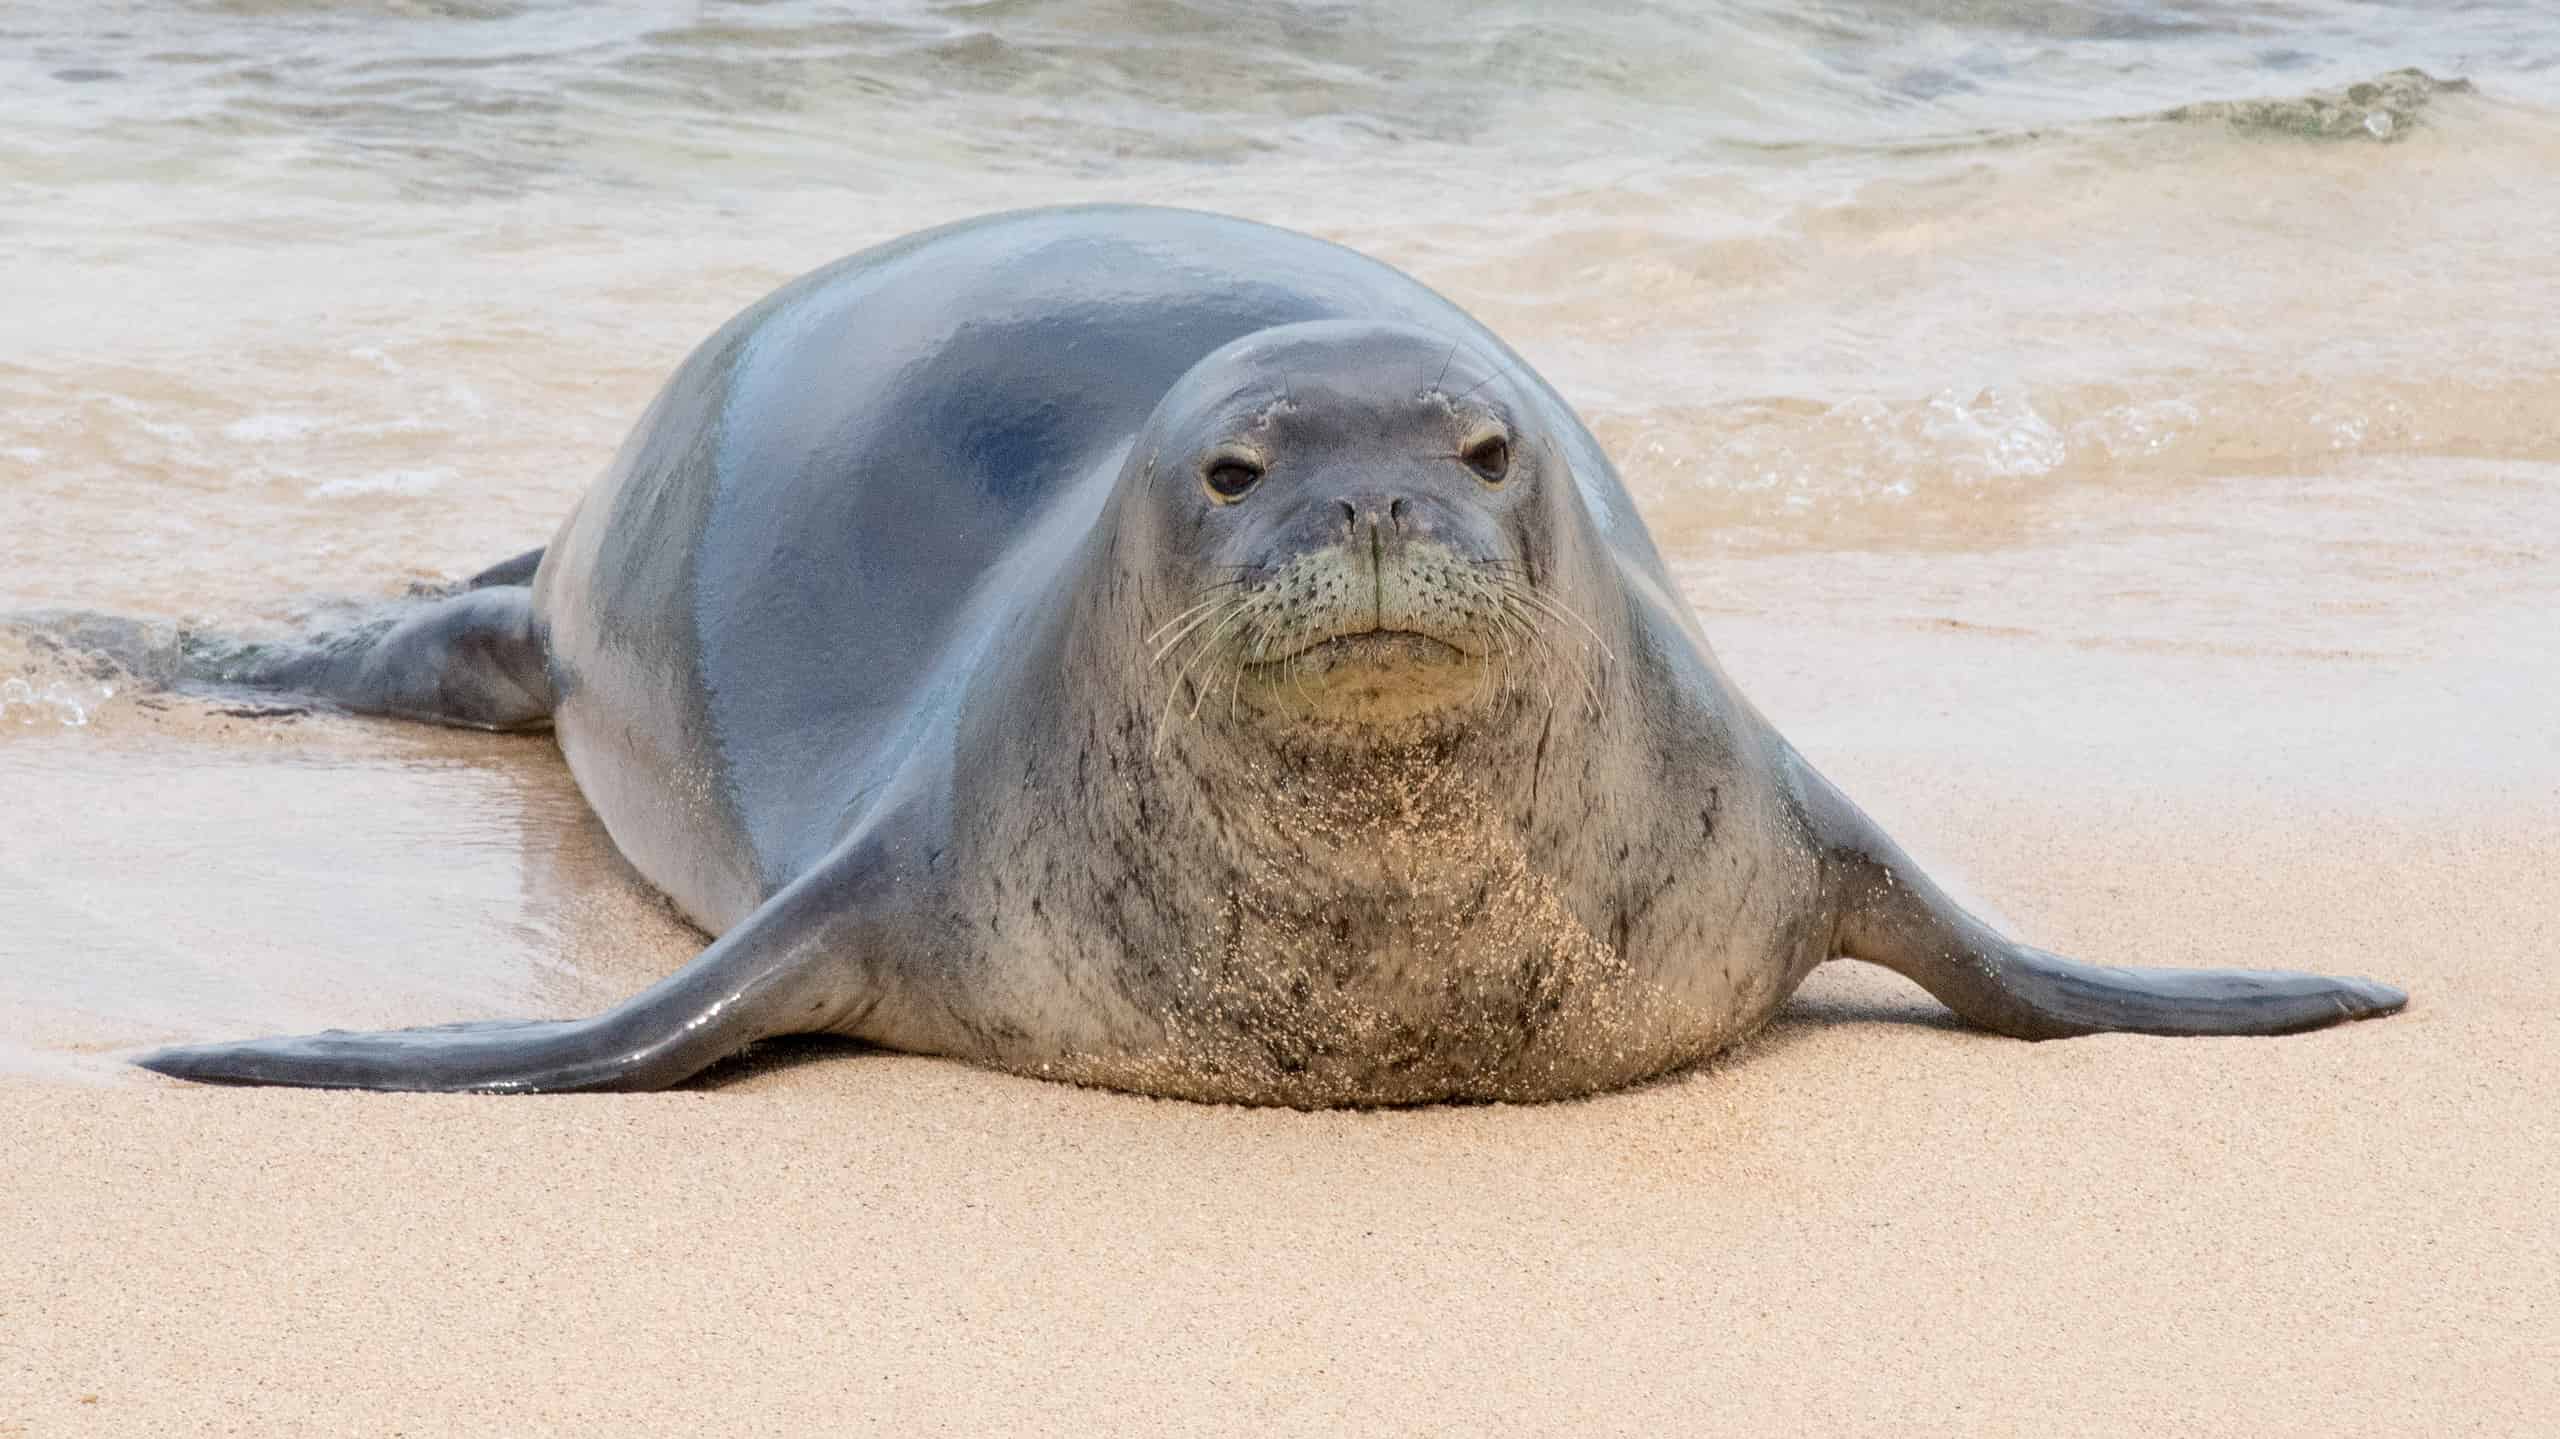 An endangered Hawaiian monk seal on a beach in Kauai, Hawaii